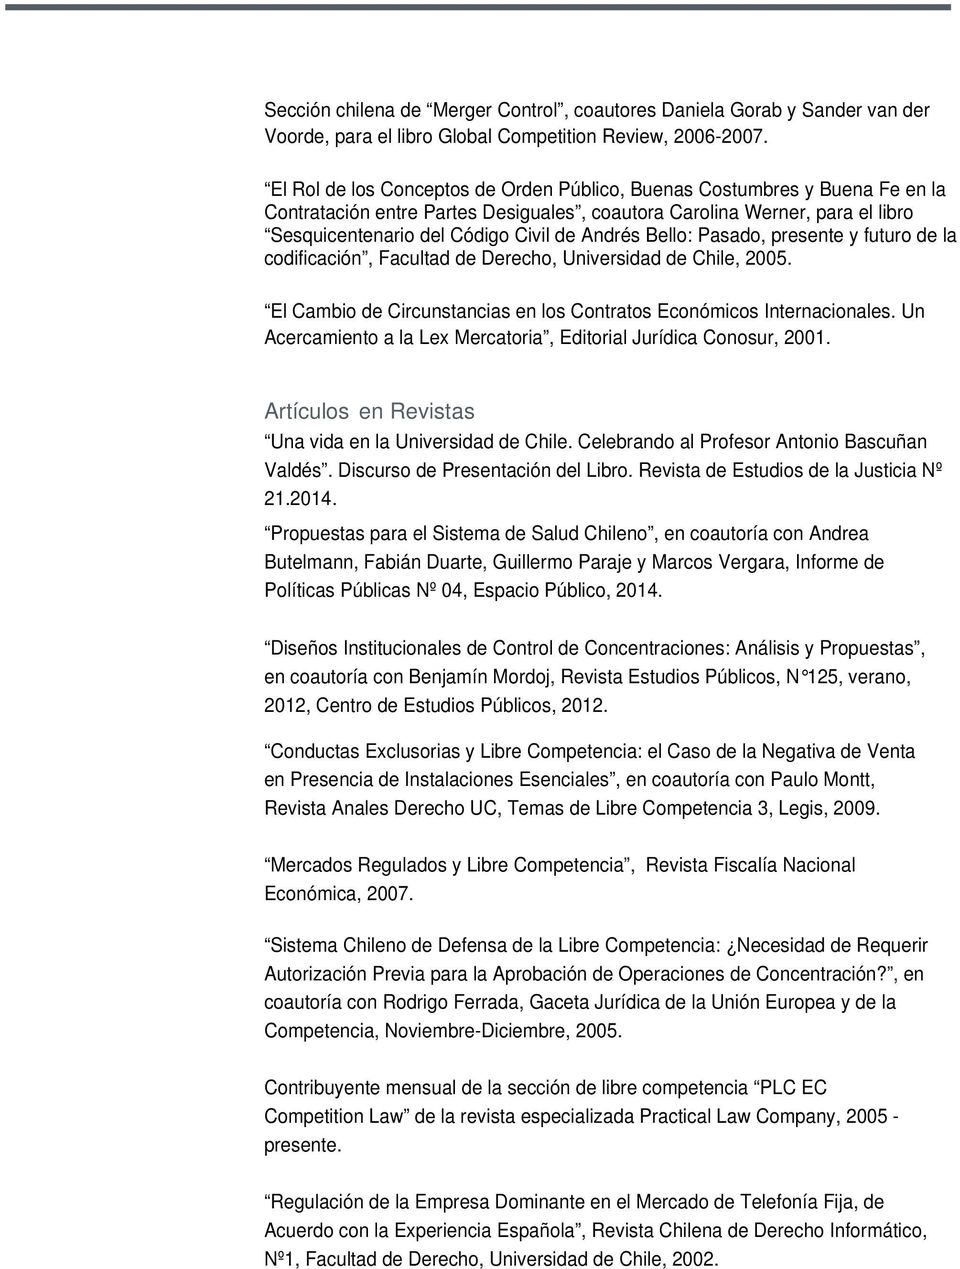 Bello: Pasado, presente y futuro de la codificación, Facultad de Derecho, Universidad de Chile, 2005. El Cambio de Circunstancias en los Contratos Económicos Internacionales.